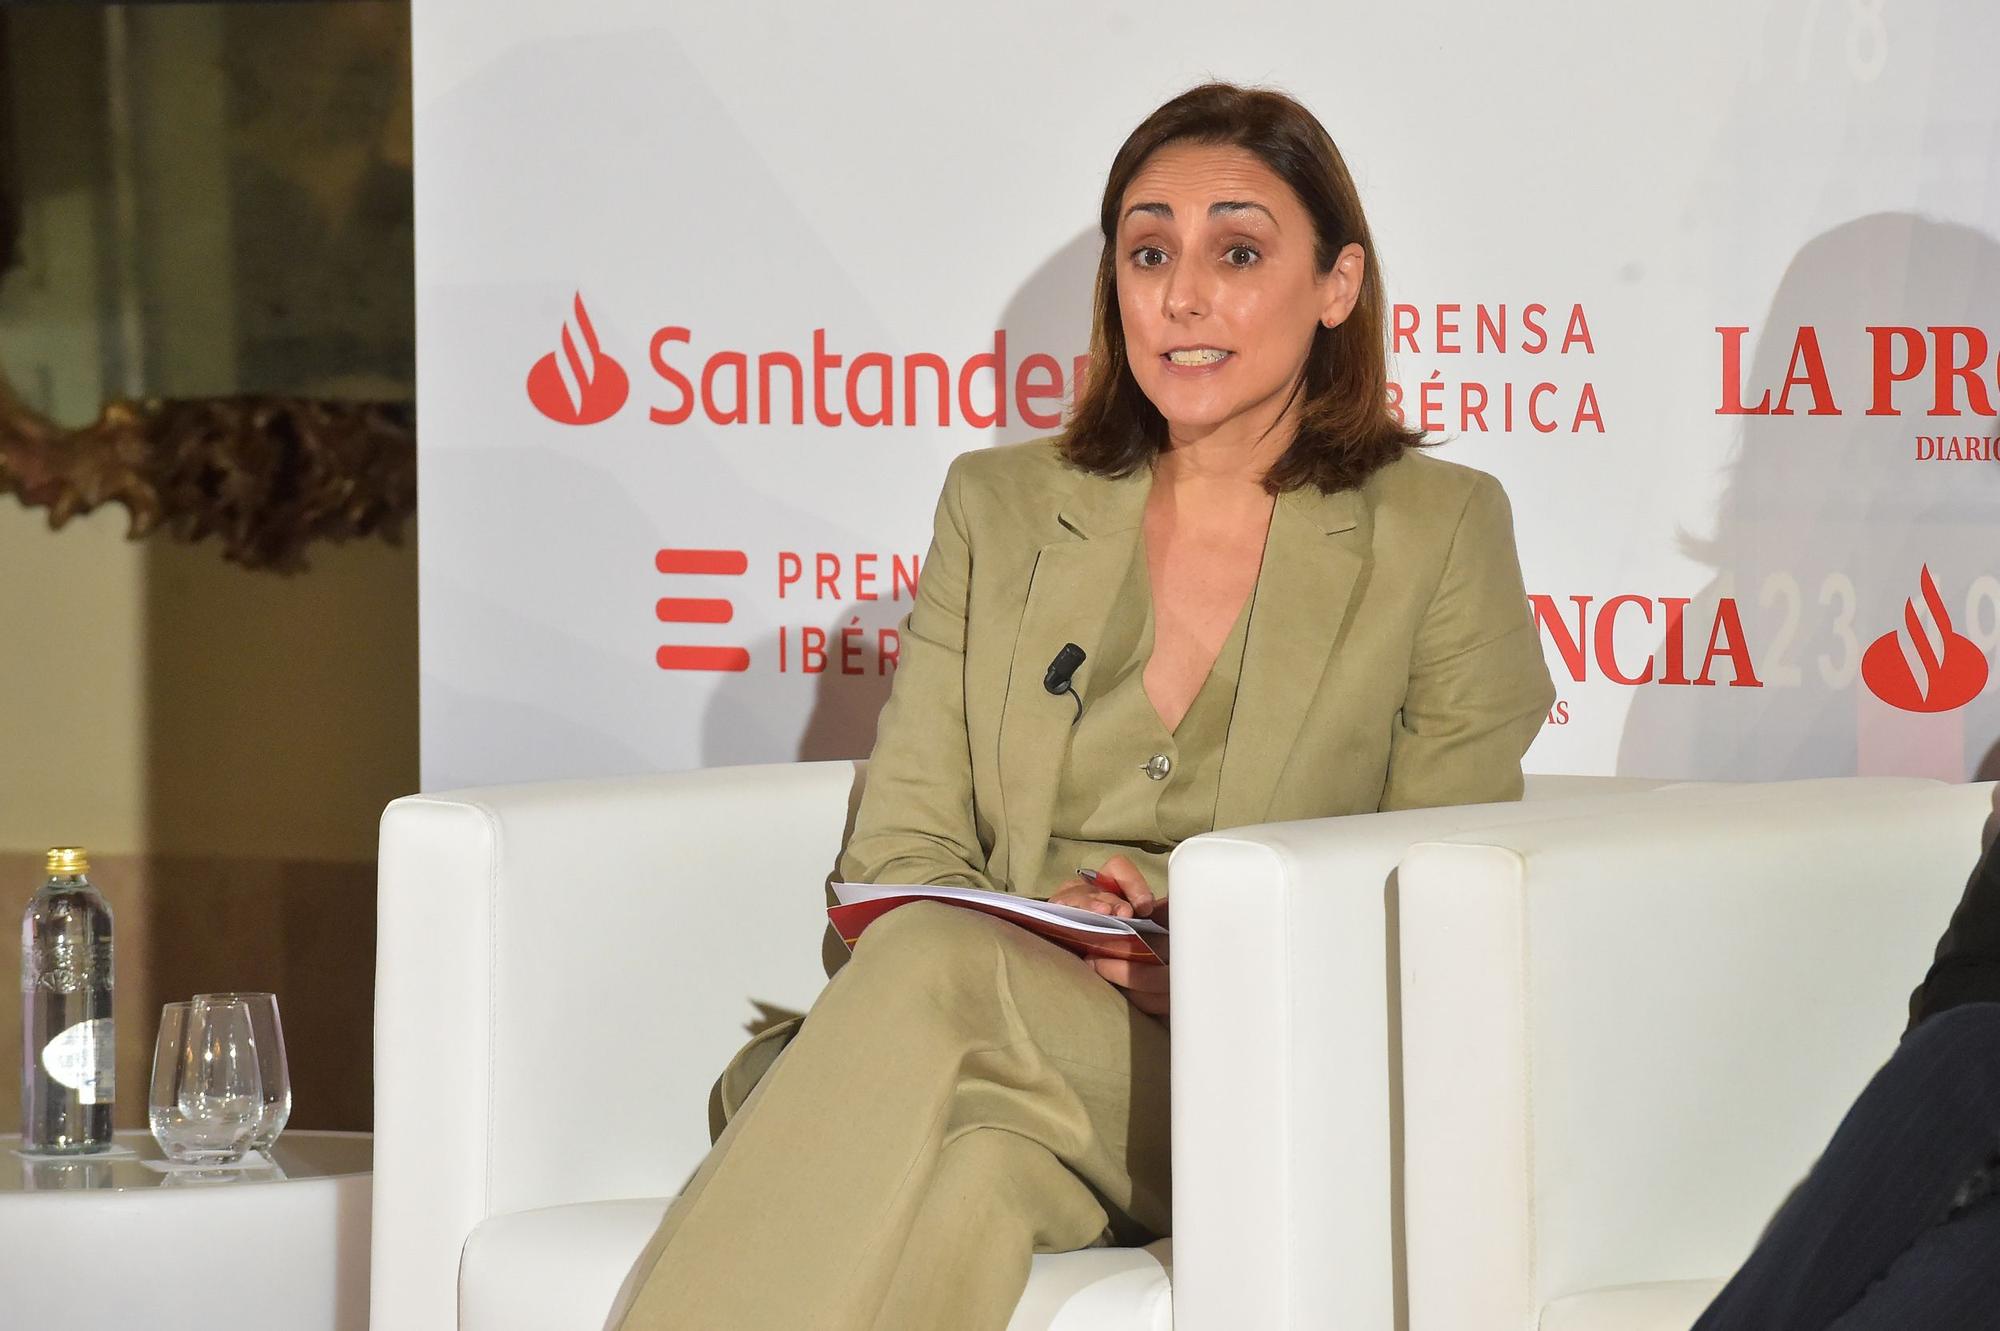 Foro Santander El desafío de las empresas